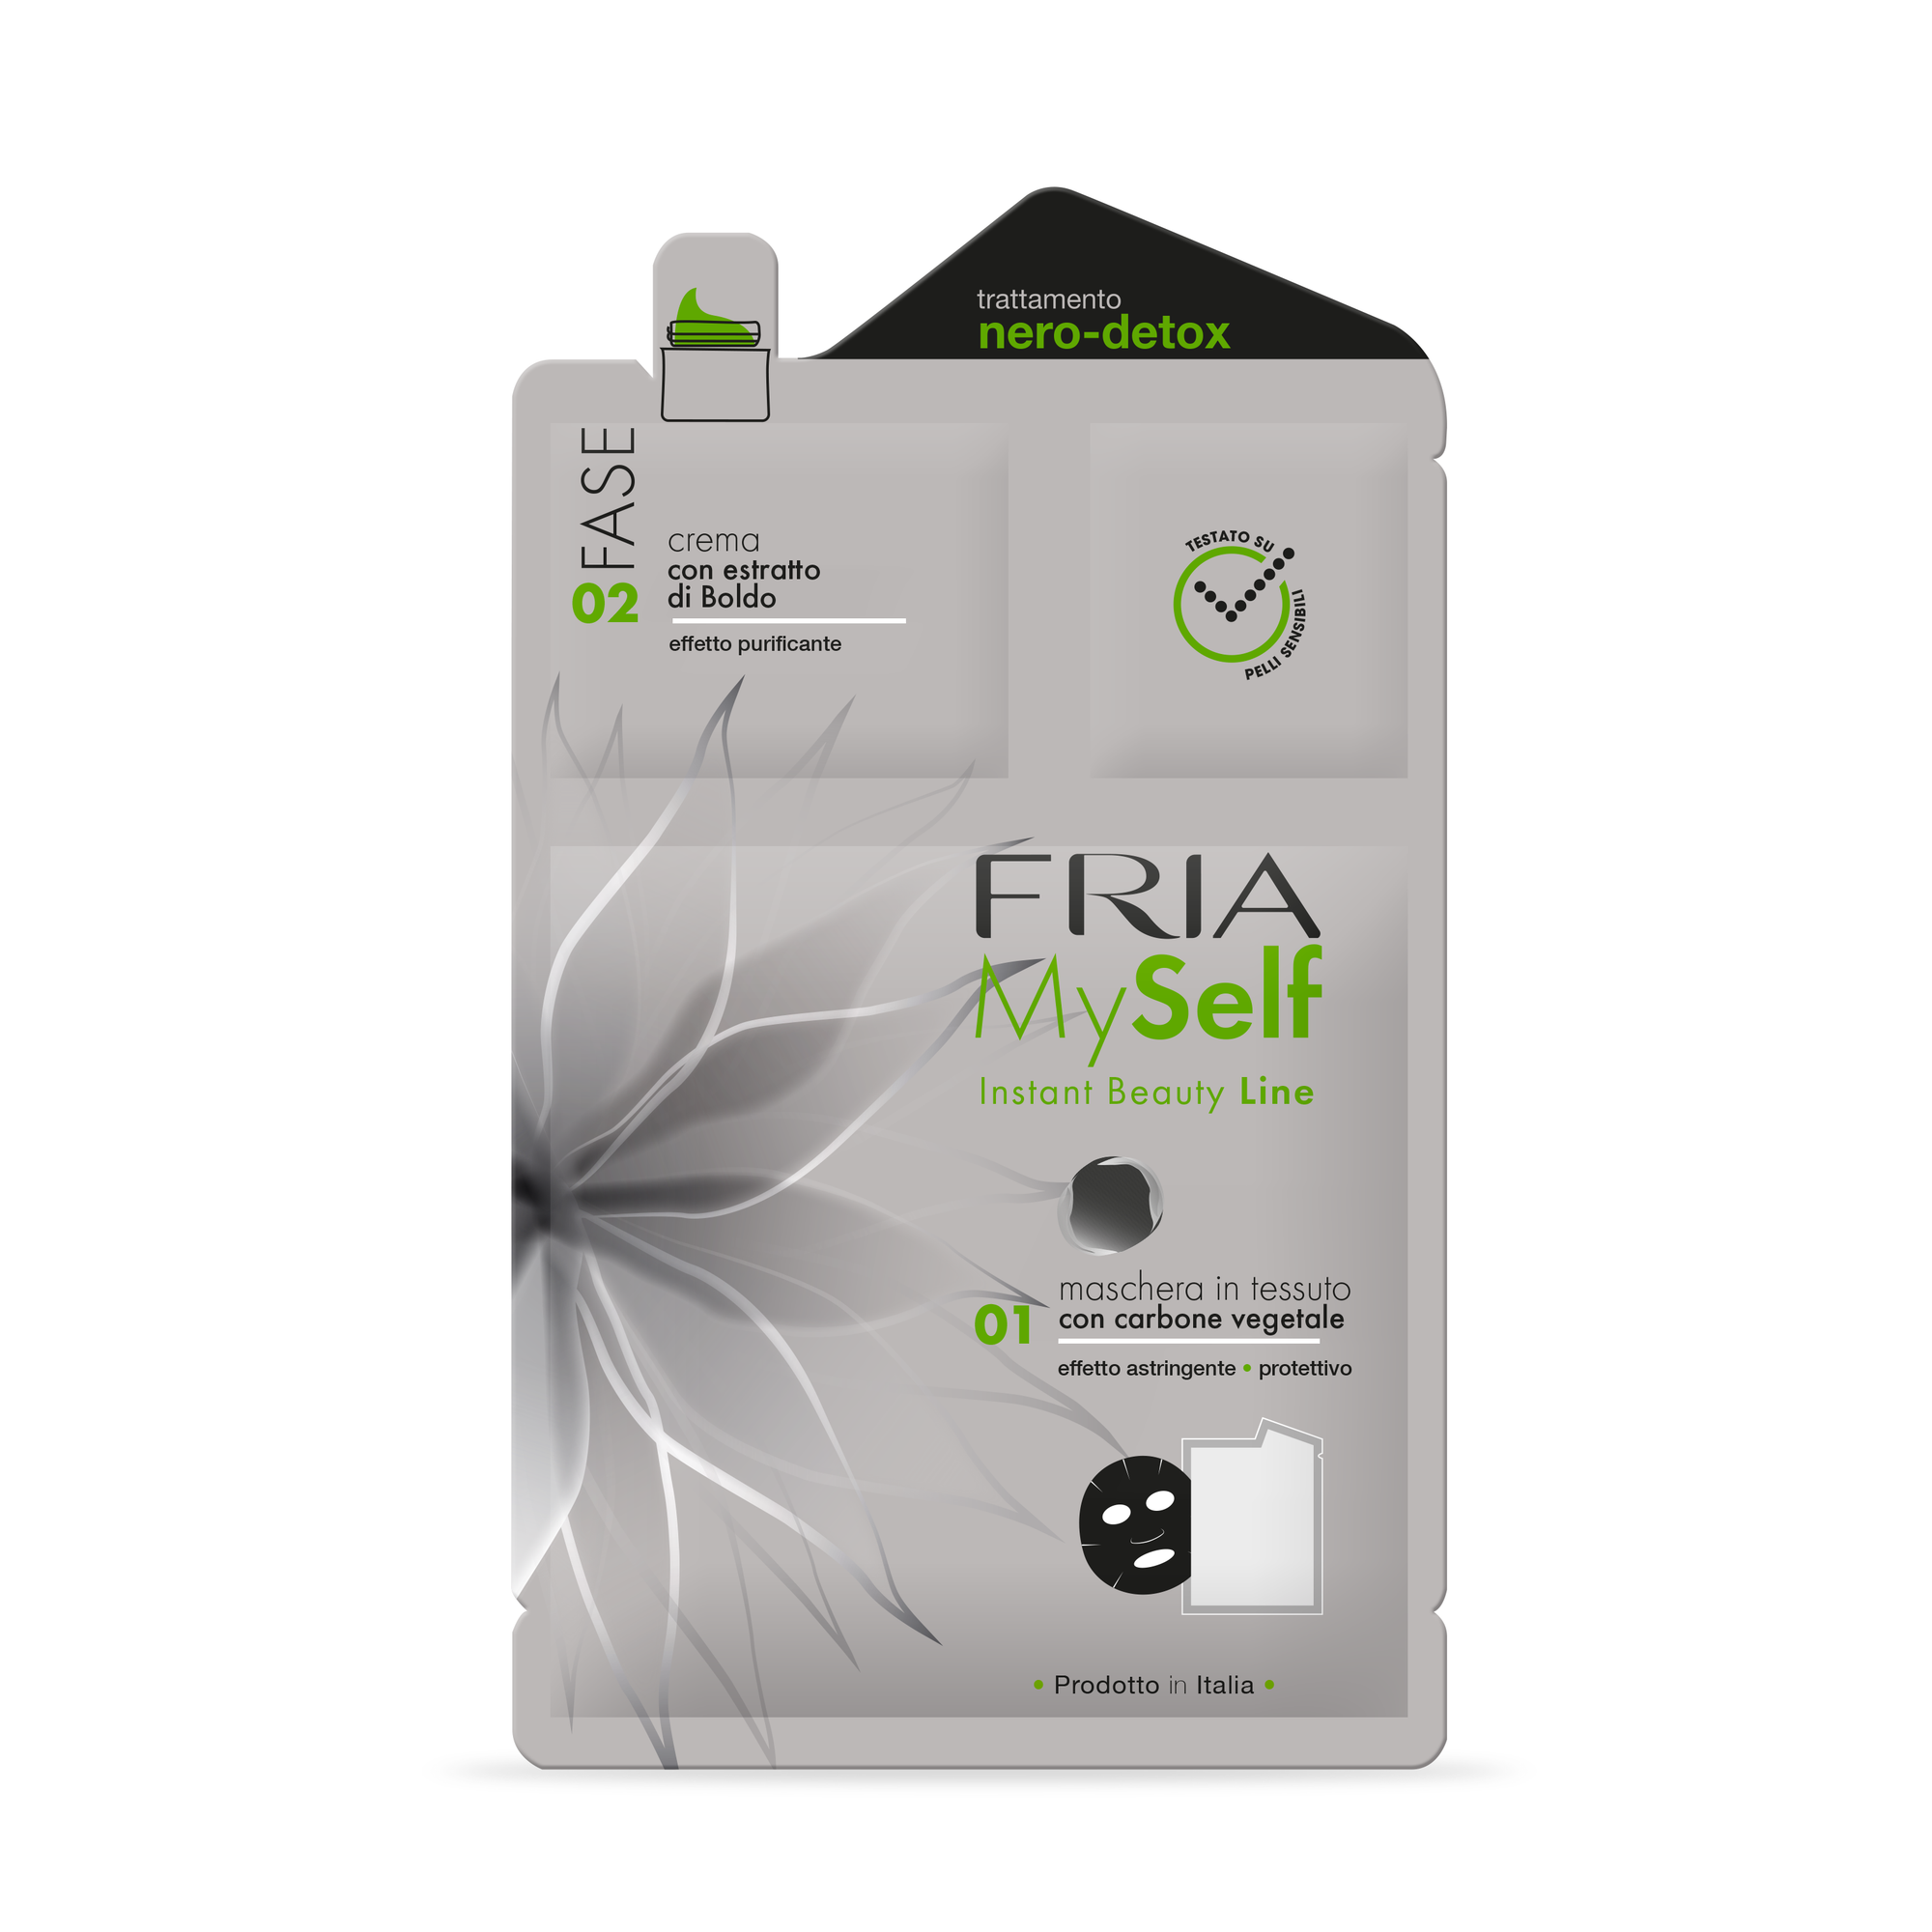 Fria Myself - Two Phase Detox Treatment